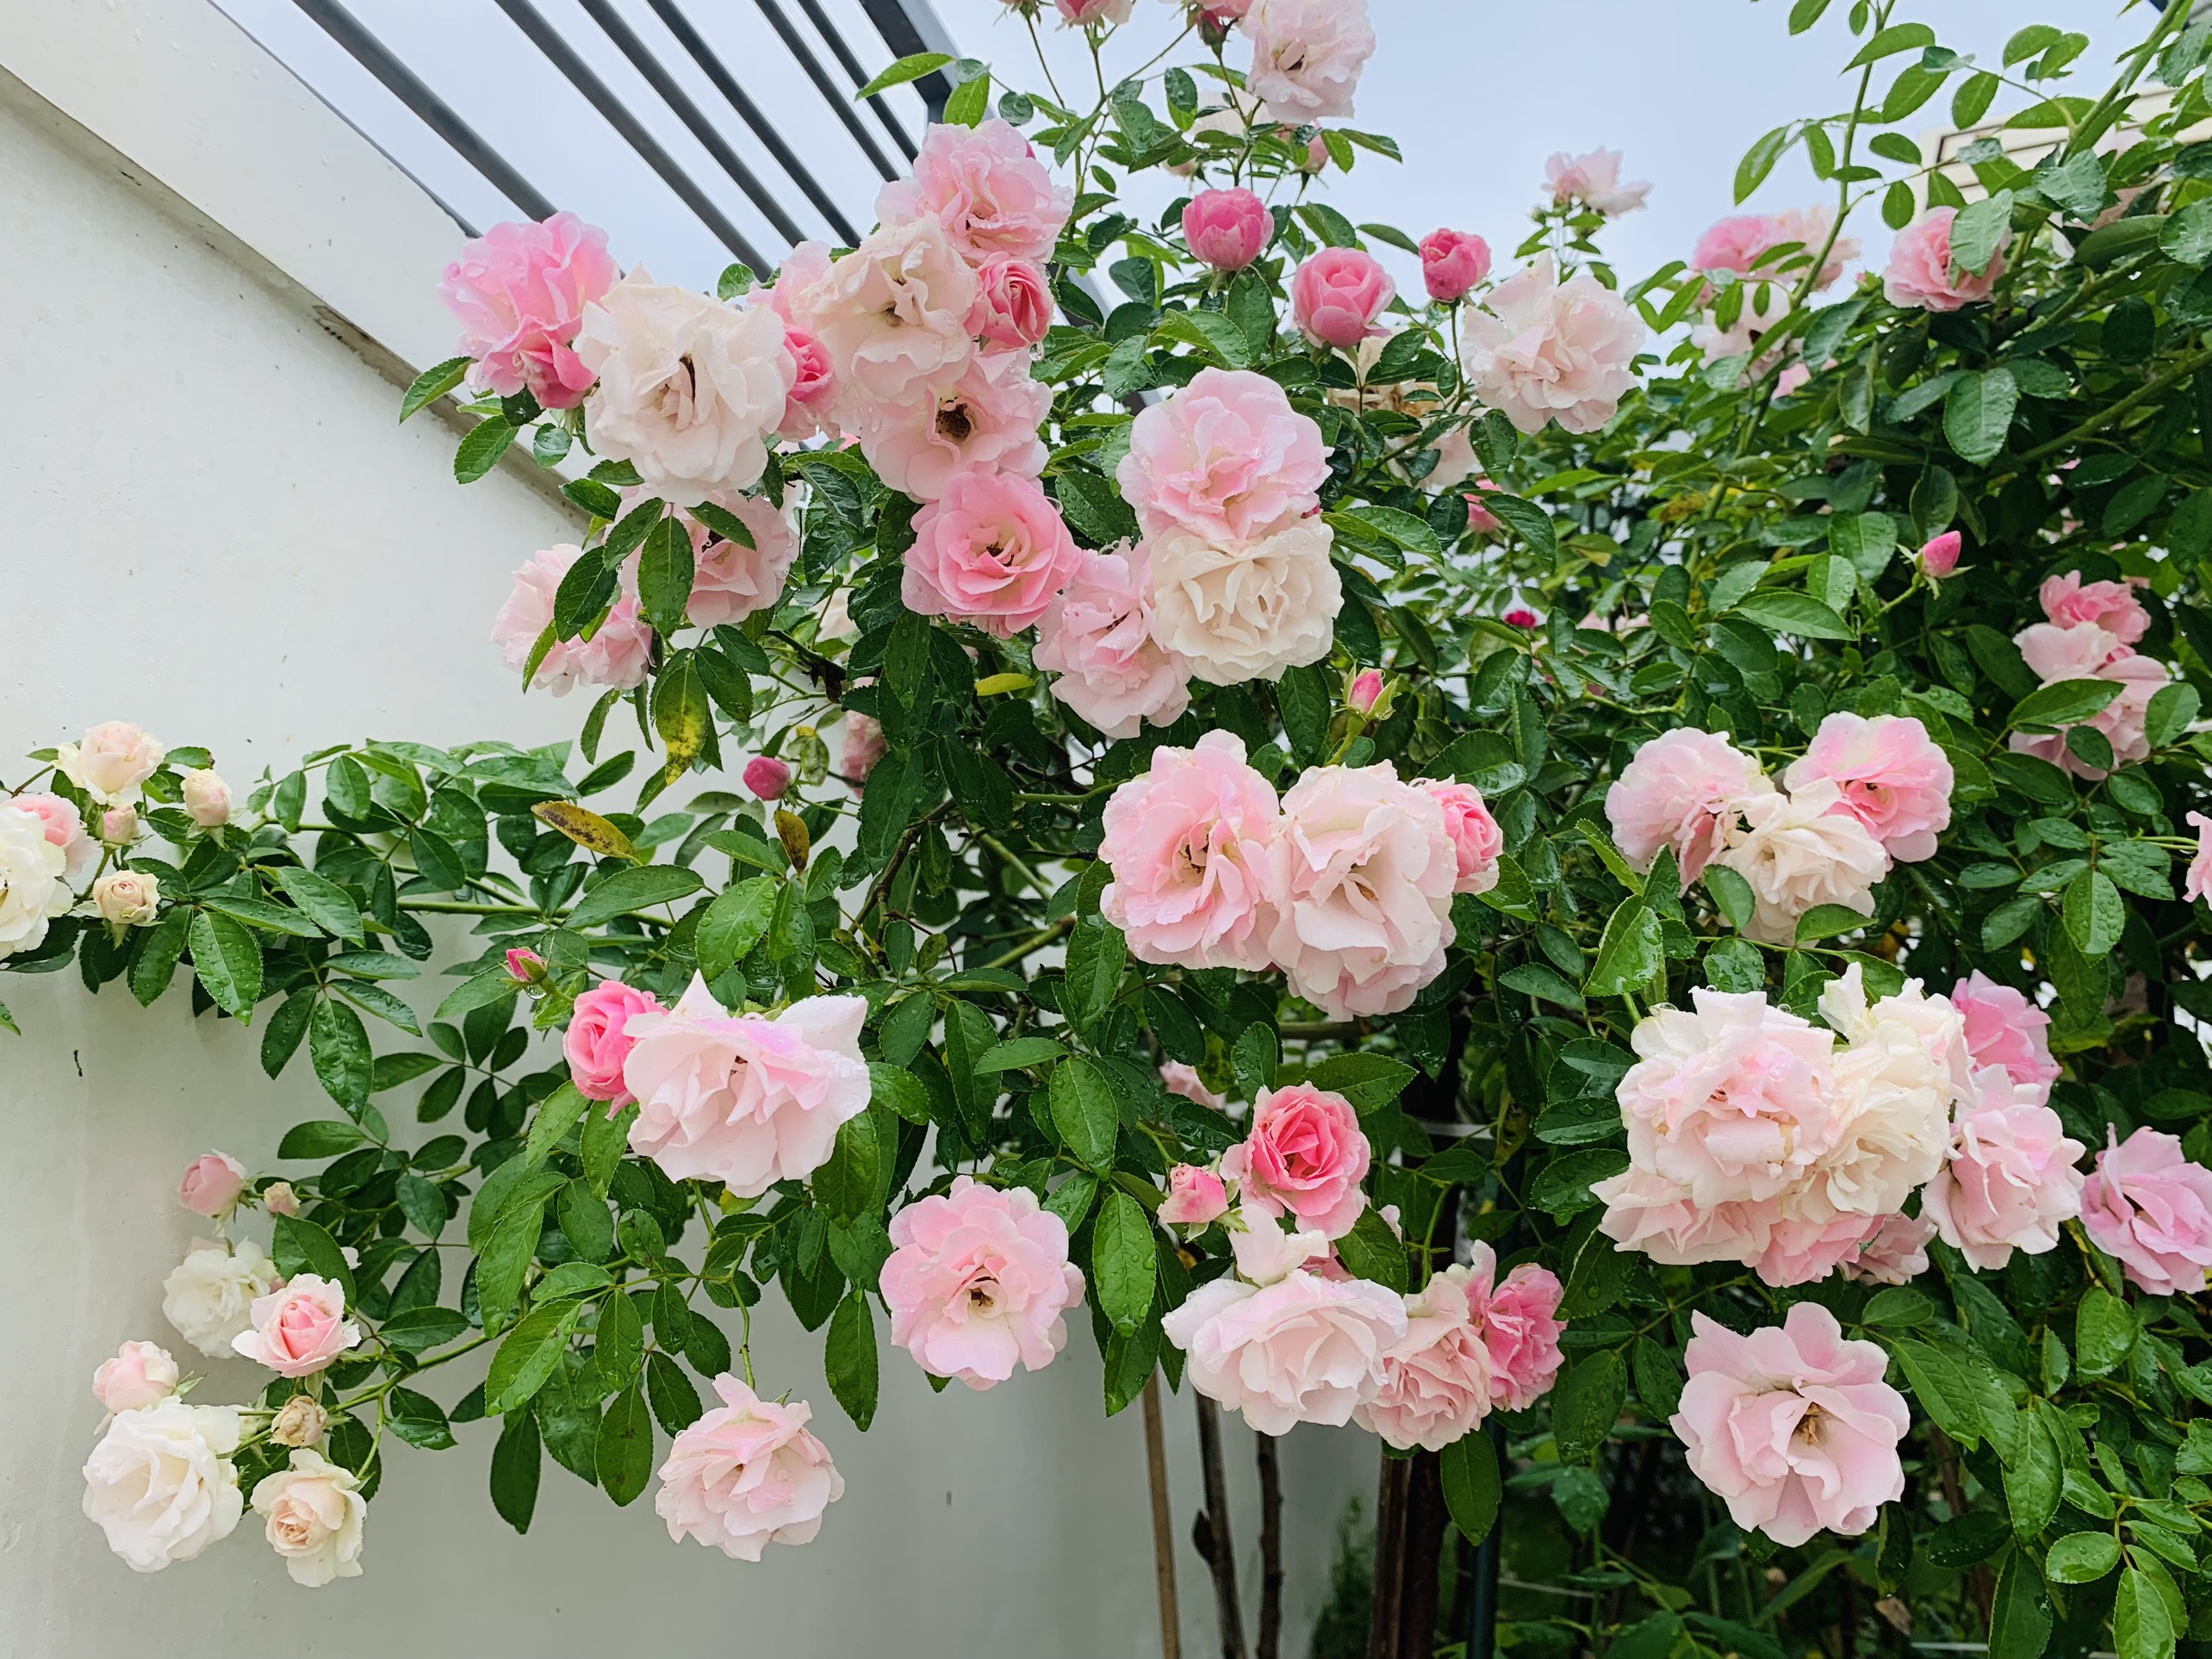 Một hình nền vườn hoa hồng đầy màu sắc rực rỡ sẽ khiến bạn cảm thấy tràn đầy sức sống. Với những bông hoa tươi đẹp, cành cây xanh tươi, bạn sẽ như được chìm đắm vào một không gian thiên nhiên thu nhỏ tuyệt vời. Cùng xả sạch các lo lắng, và đắm mình trong vẻ đẹp hoàn hảo đó.